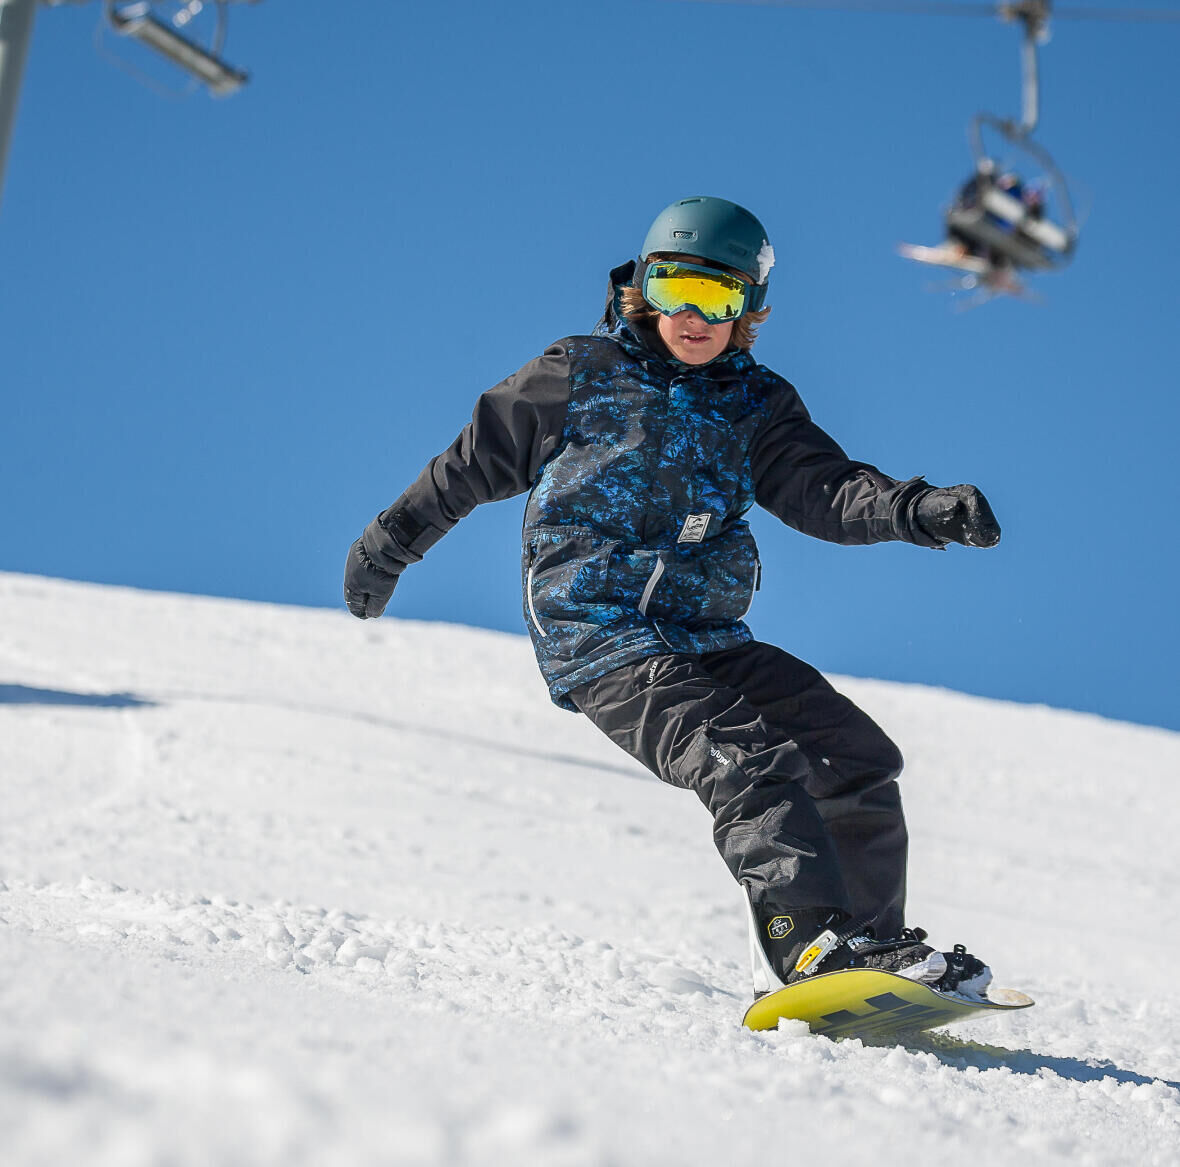 boy on a snowboard